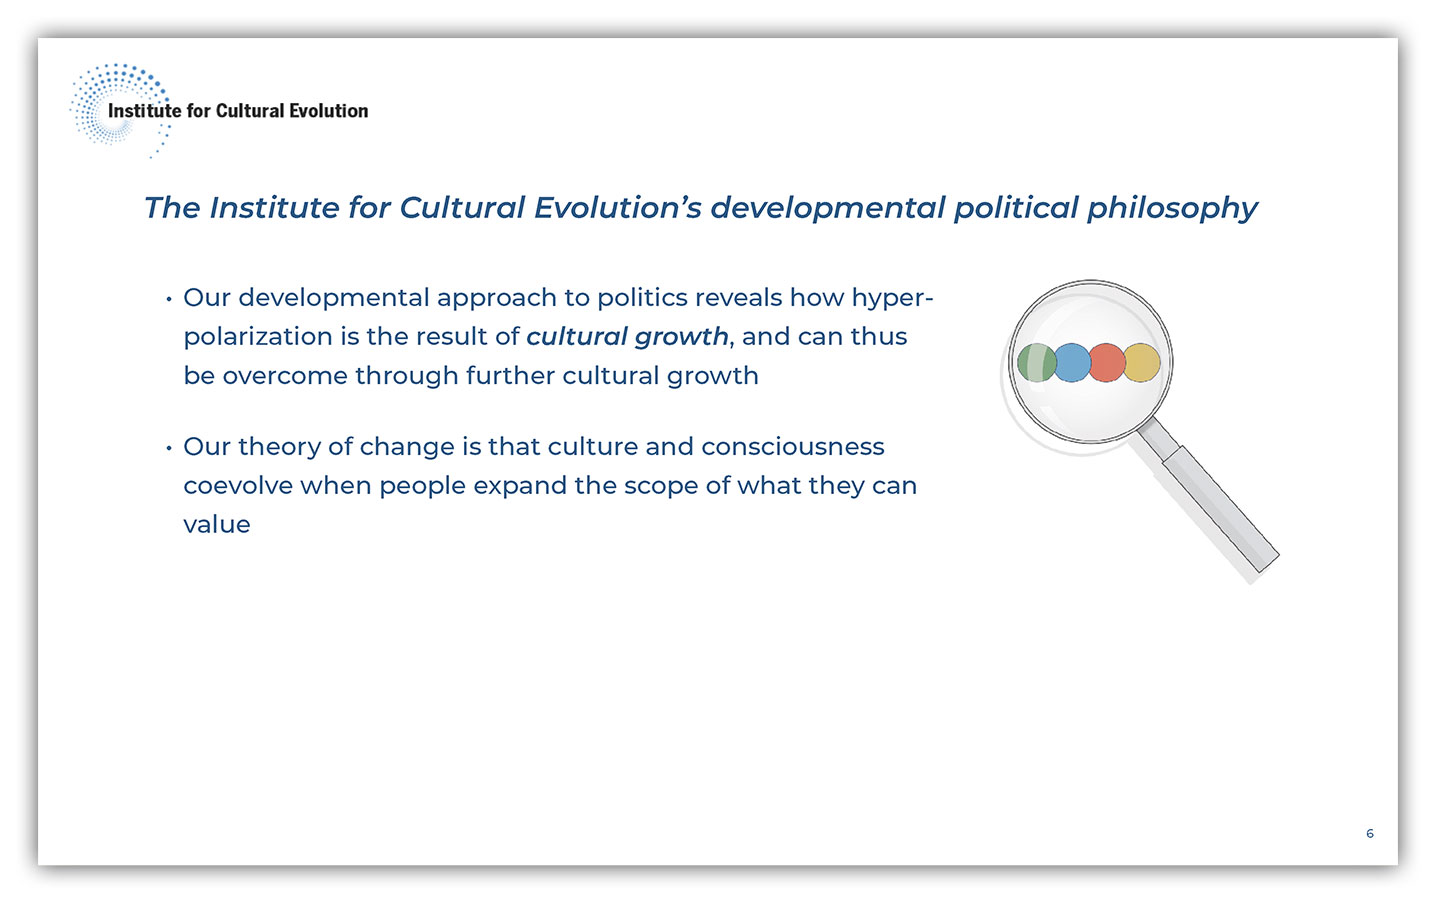 institute-for-cultural-evolution-presentation-spring-2022-06